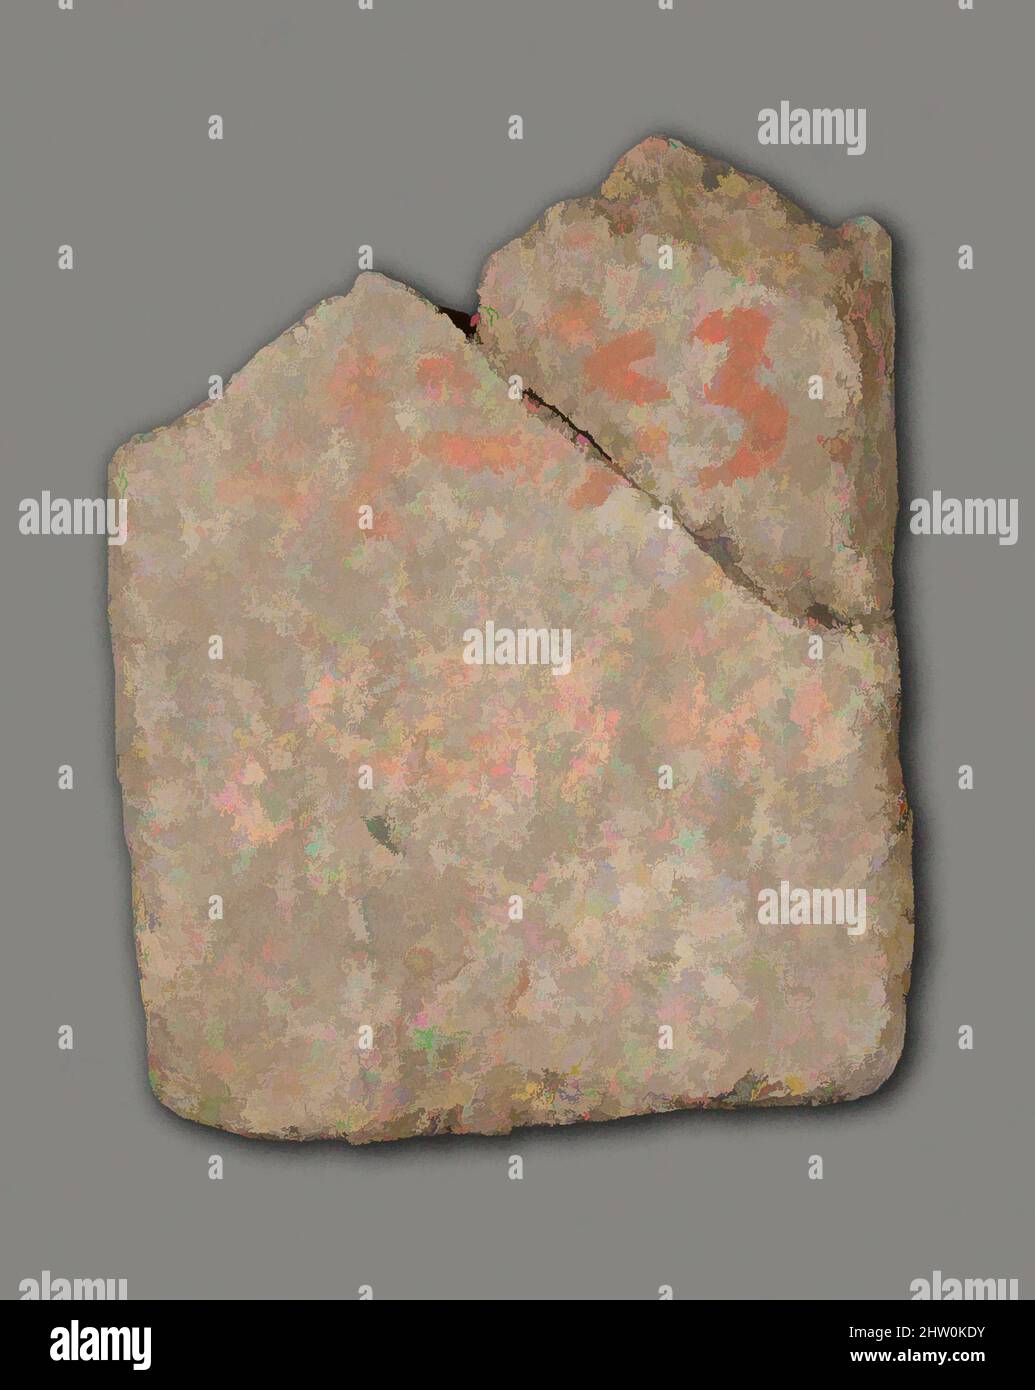 Art inspiré par la figure magique, fin du Royaume moyen–deuxième période intermédiaire, dynastie 13–SIP, env. 1802–1550 av. J.-C., d'Égypte, région Memphite, Lisht Sud, à l'ouest de la mastaba de Senwosretankh, dépôt de surface, 1932–33, Clay (non tiré), H. 4,7 cm (1 7/8 po.); W. 3,8 cm (1 1/2 po., œuvres classiques modernisées par Artotop avec une touche de modernité. Formes, couleur et valeur, impact visuel accrocheur sur l'art émotions par la liberté d'œuvres d'art d'une manière contemporaine. Un message intemporel qui cherche une nouvelle direction créative. Artistes qui se tournent vers le support numérique et créent le NFT Artotop Banque D'Images